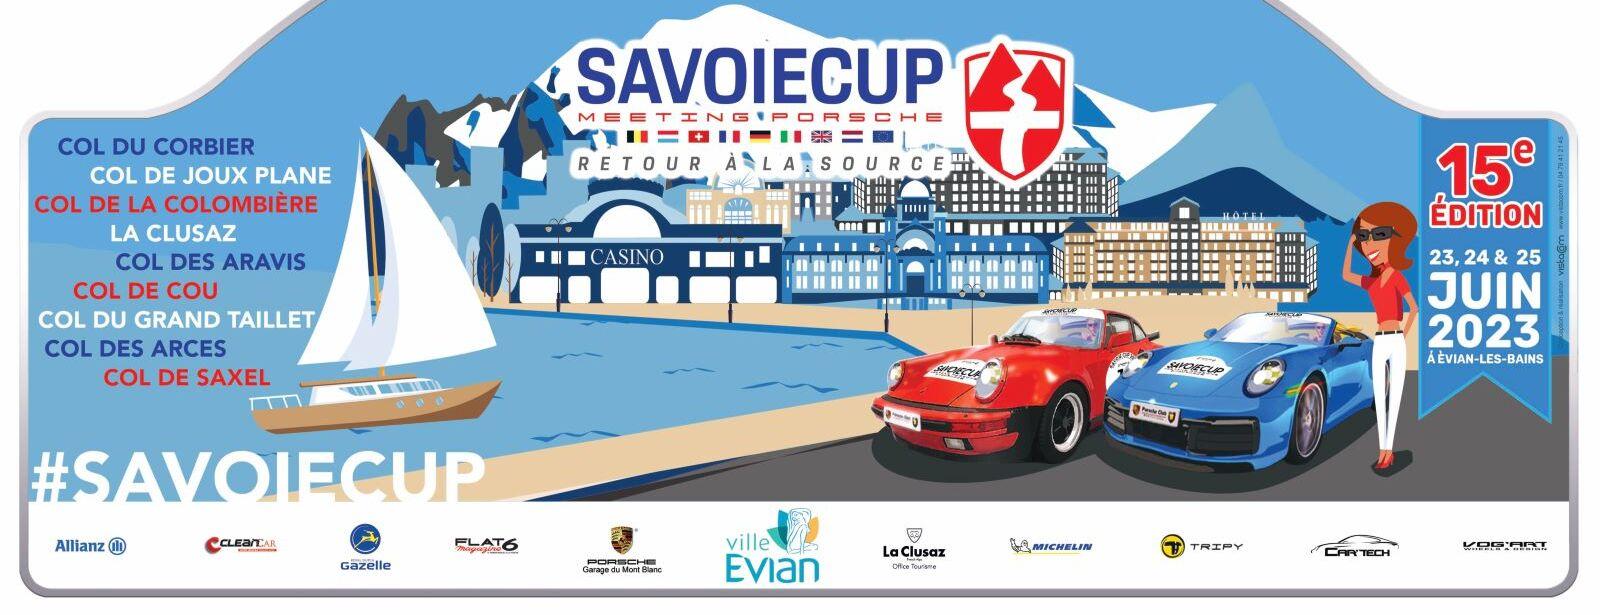 Savoie cup 2023